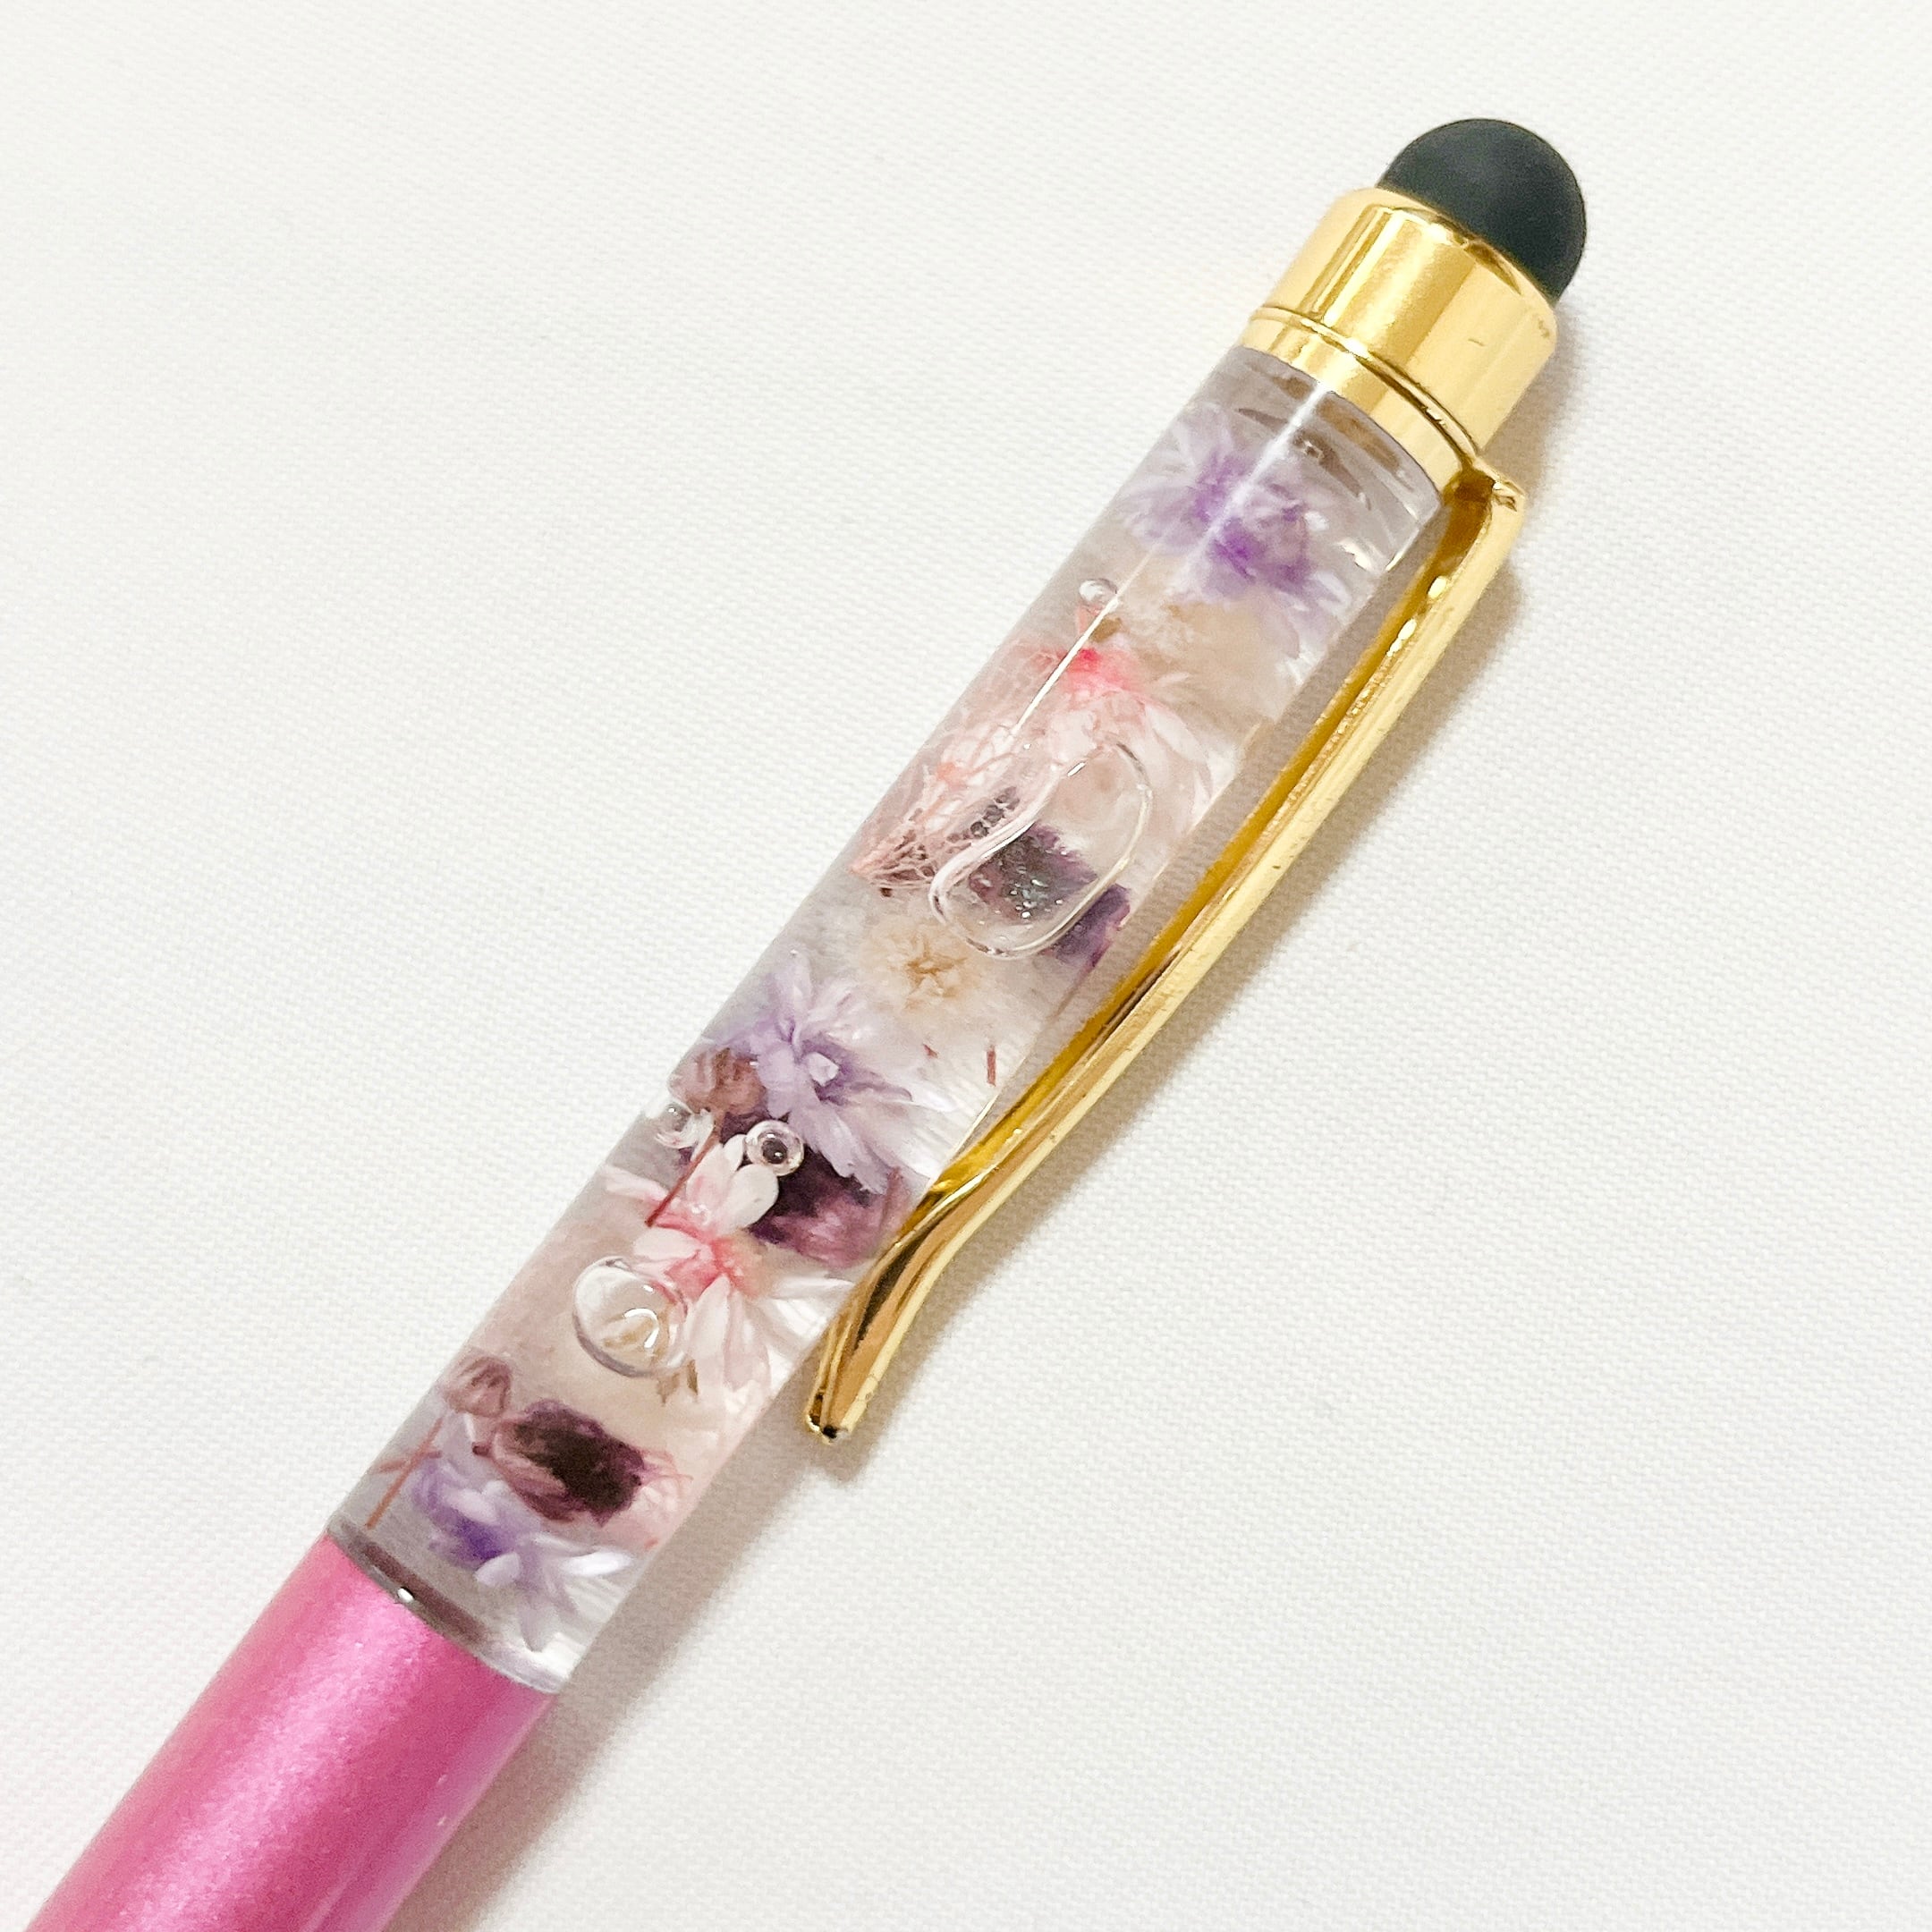 タッチペン3本セット 水色と紫と金色